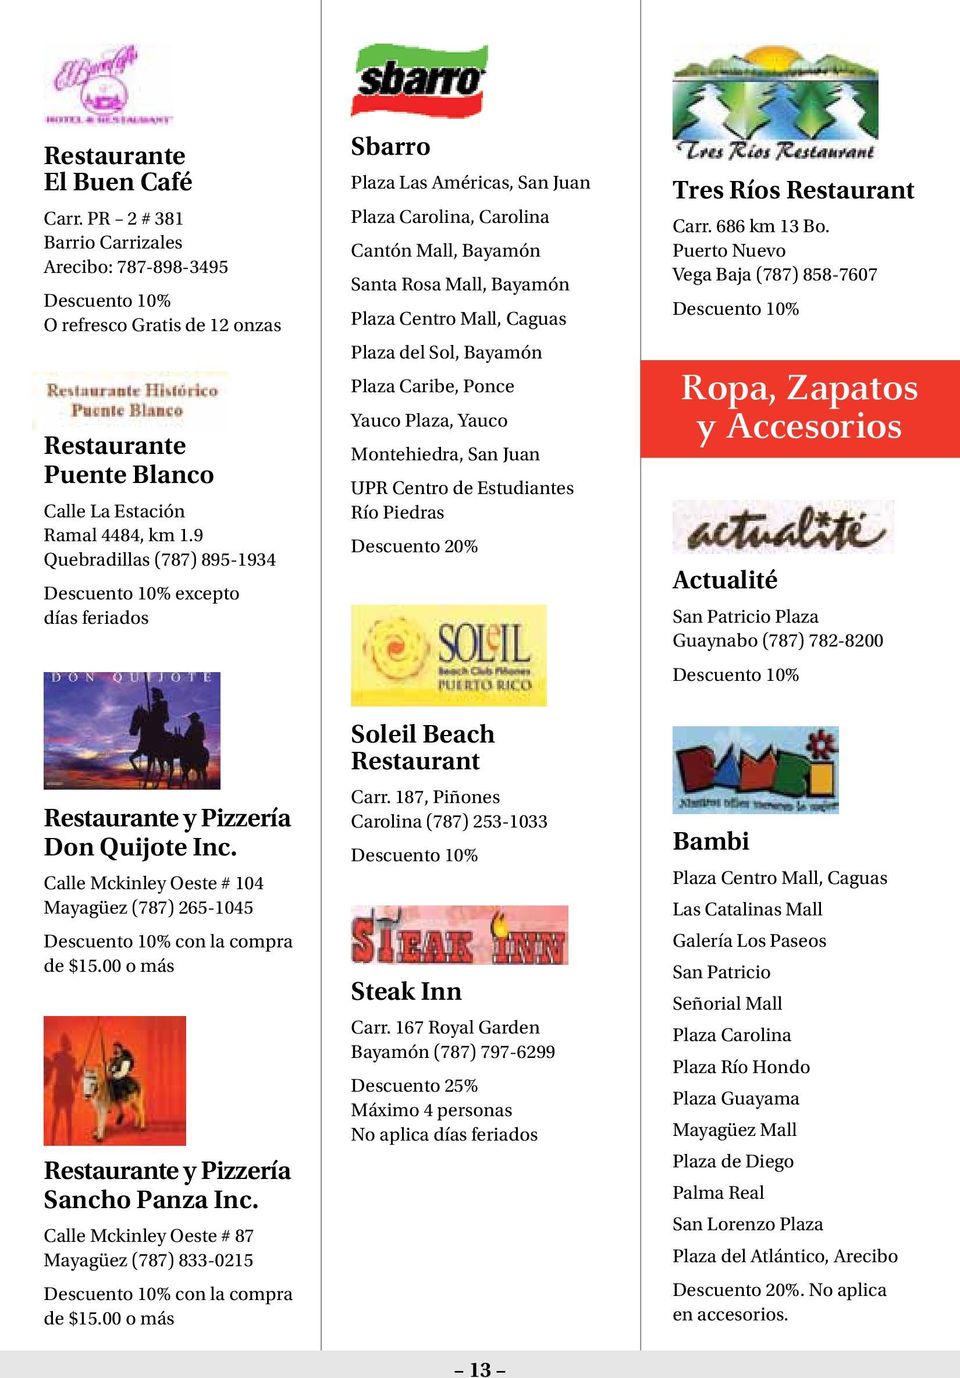 00 o más Restaurante y Pizzería Sancho Panza Inc. Calle Mckinley Oeste # 87 Mayagüez (787) 833-0215 con la compra de $15.